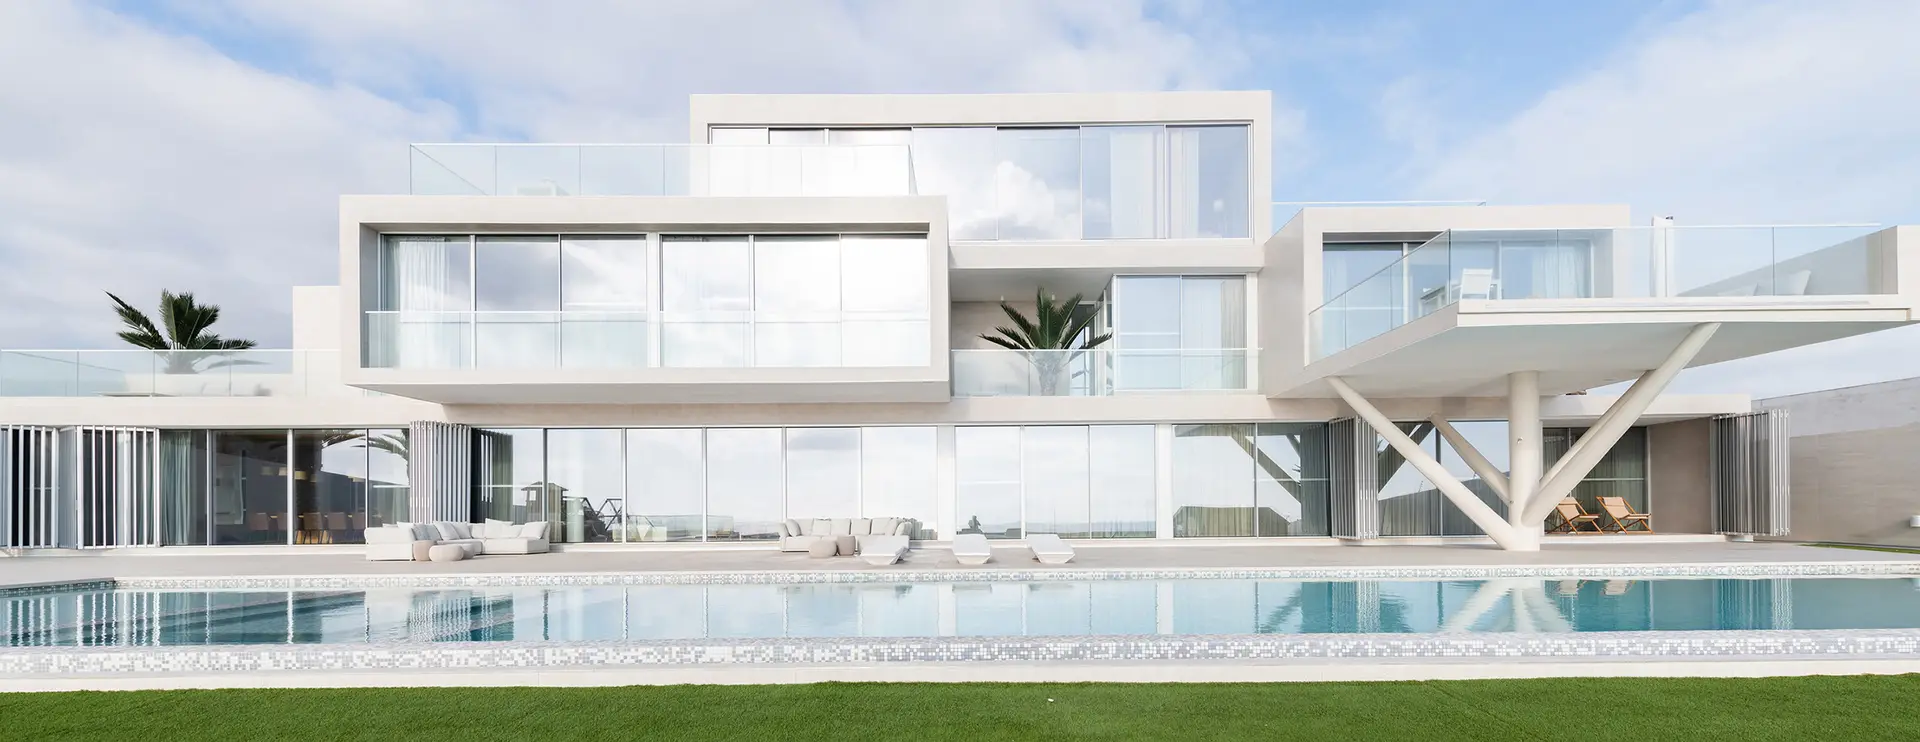 Arquiteta portuguesa premiada entre mais de 600 finalistas a nível mundial